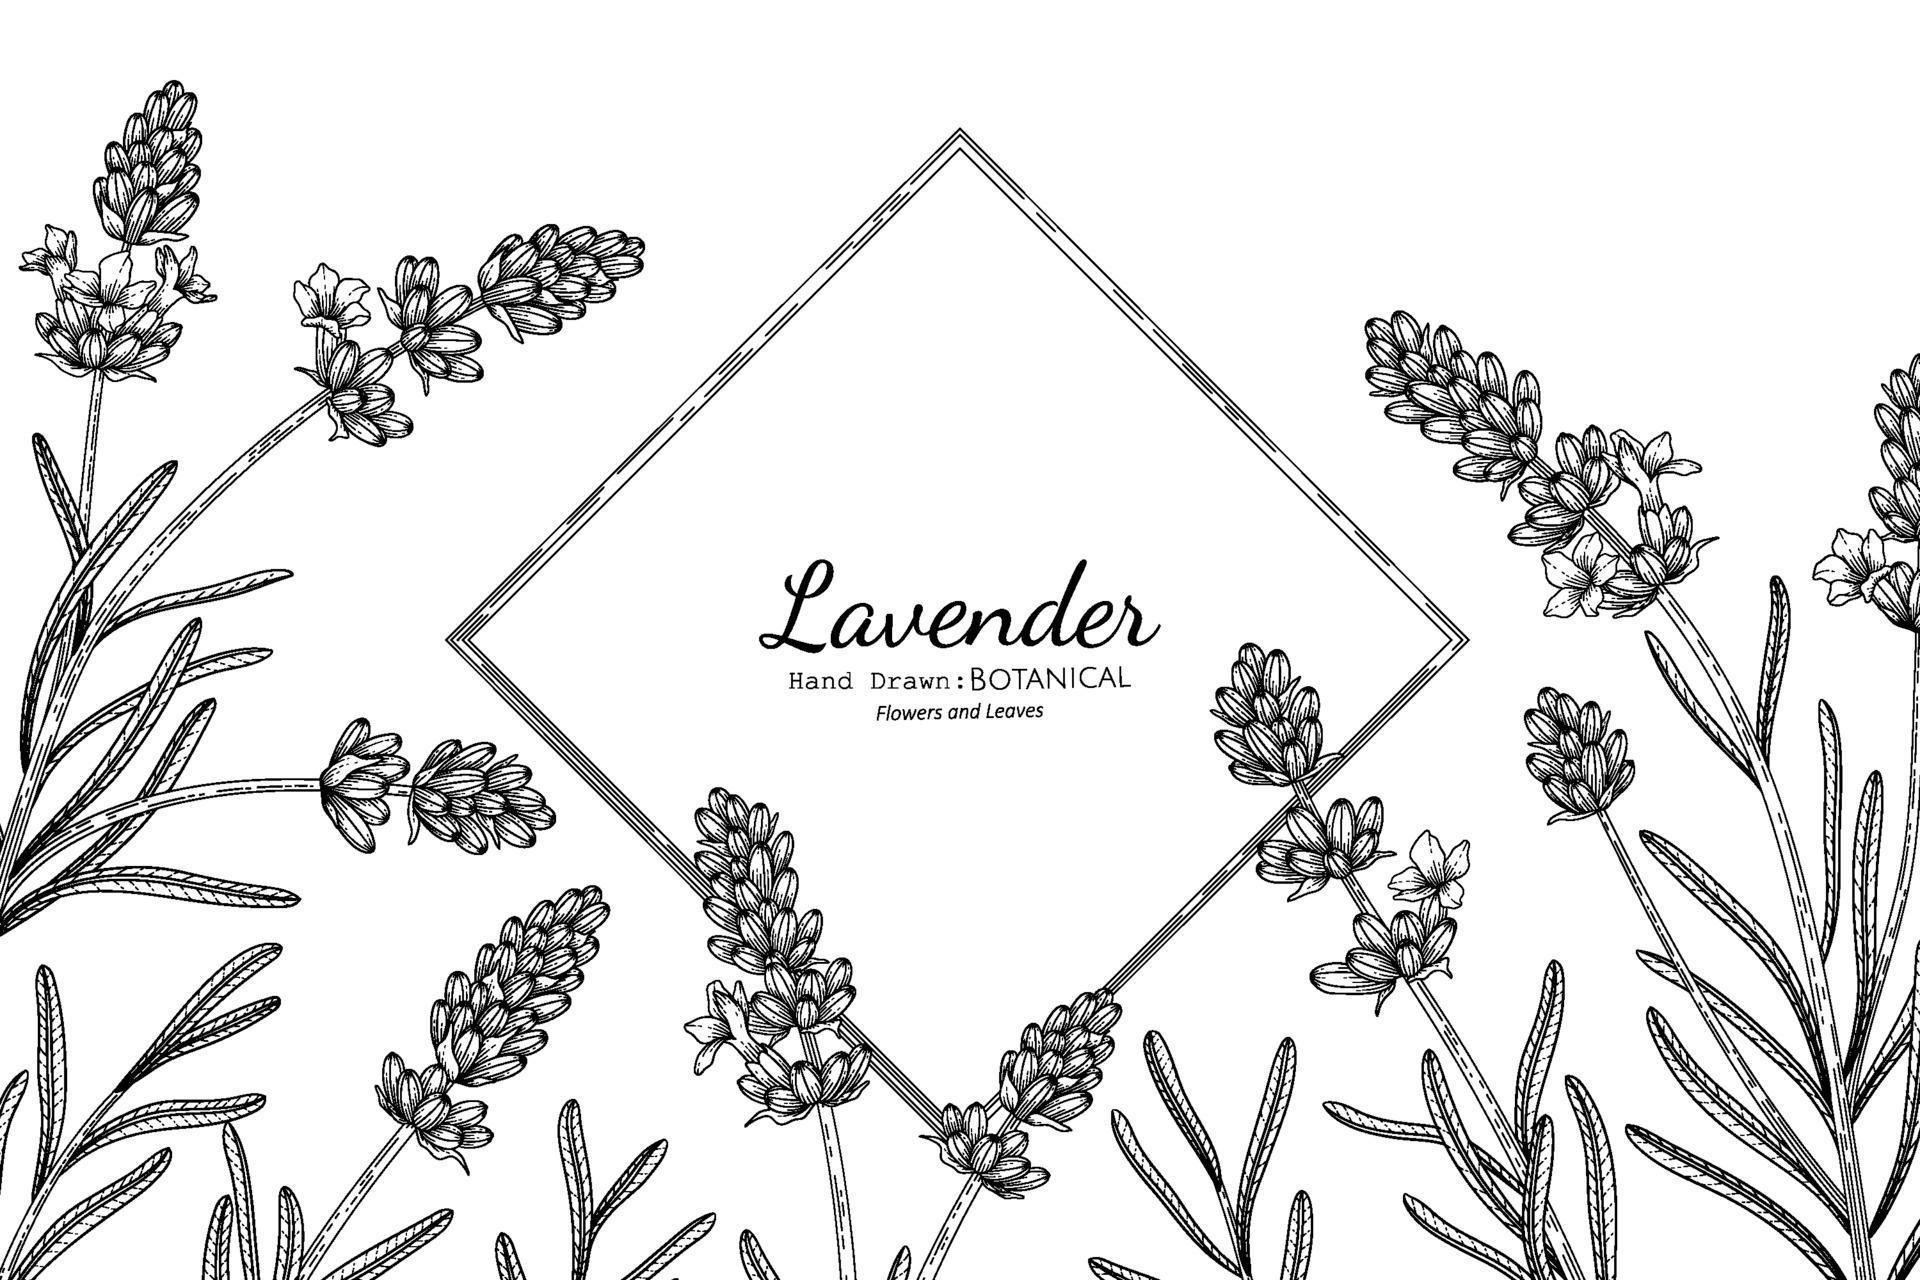 Lavender flower and leaf hand drawn botanical illustration with line art. 